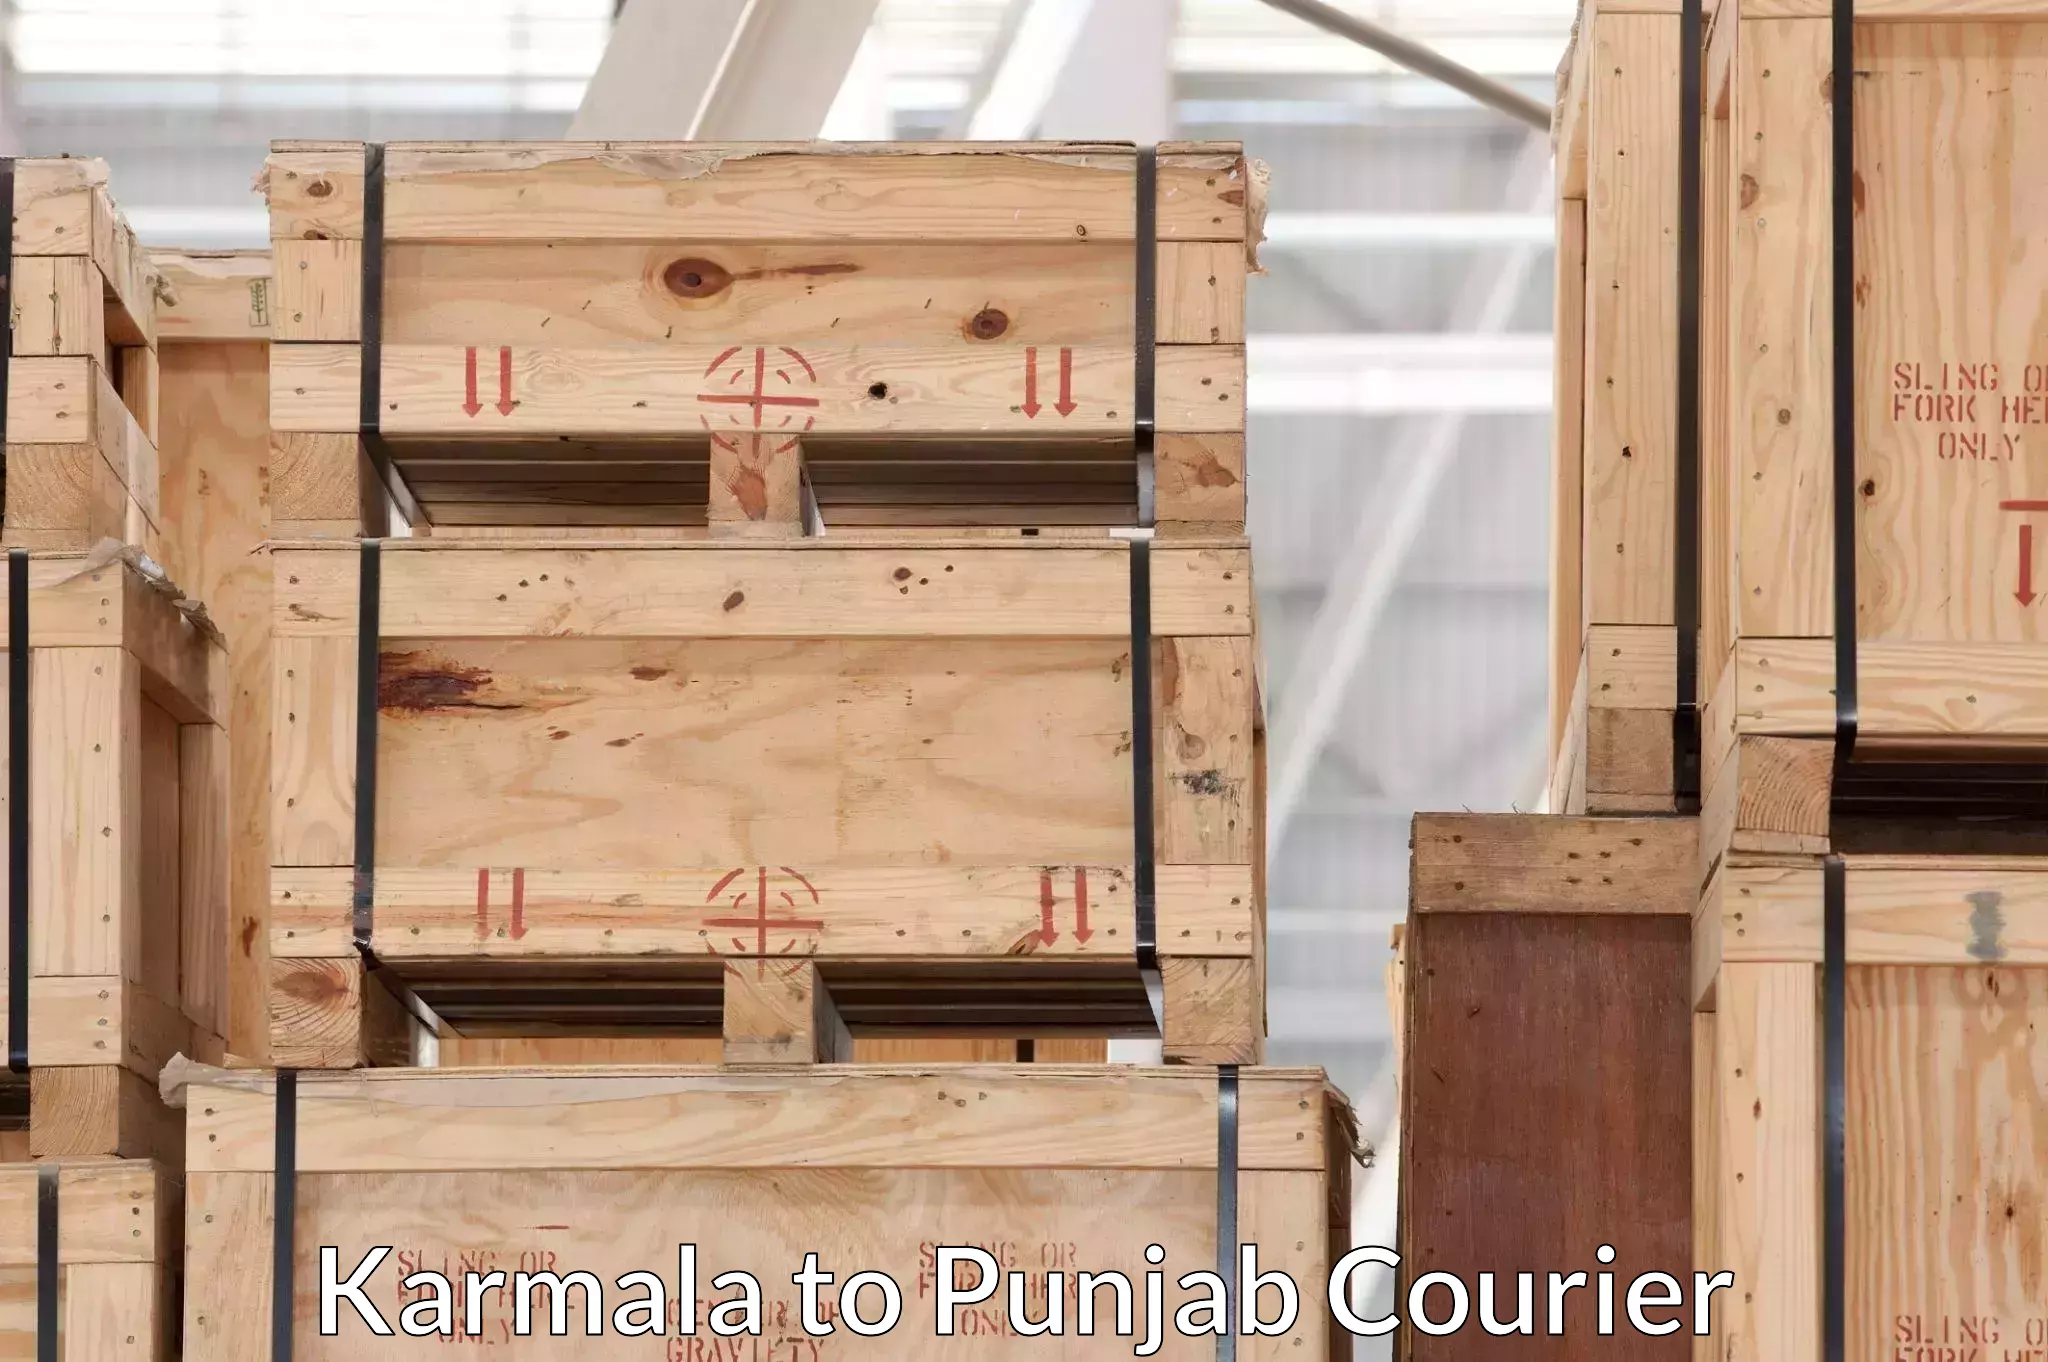 Reliable goods transport Karmala to Faridkot